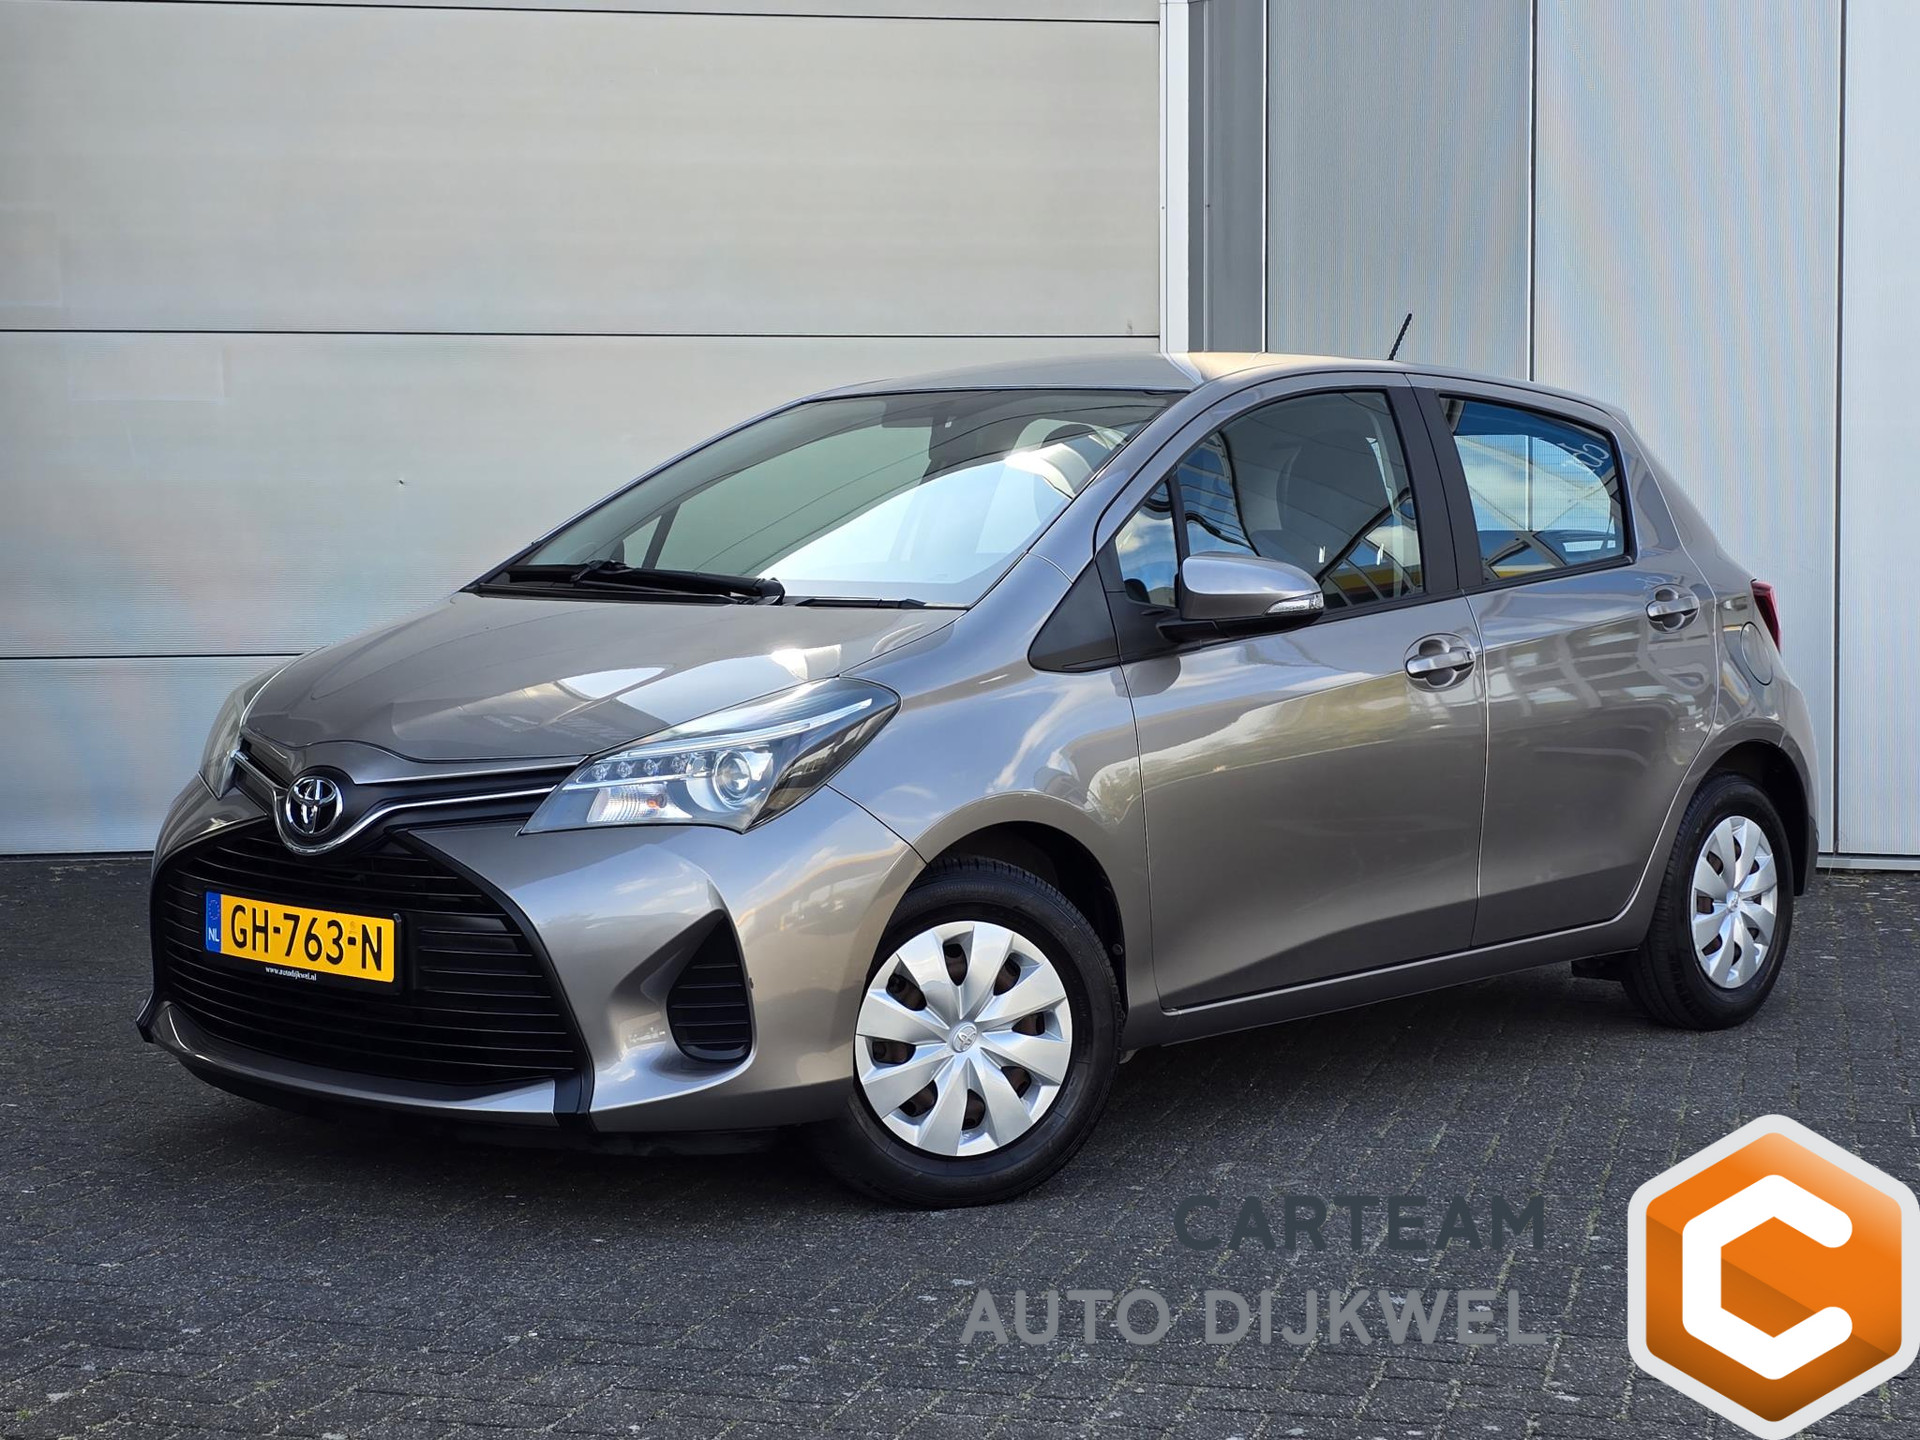 Toyota Yaris 1.0 VVT-i Comfort Nieuwstaat! Slechts 11.000 km!